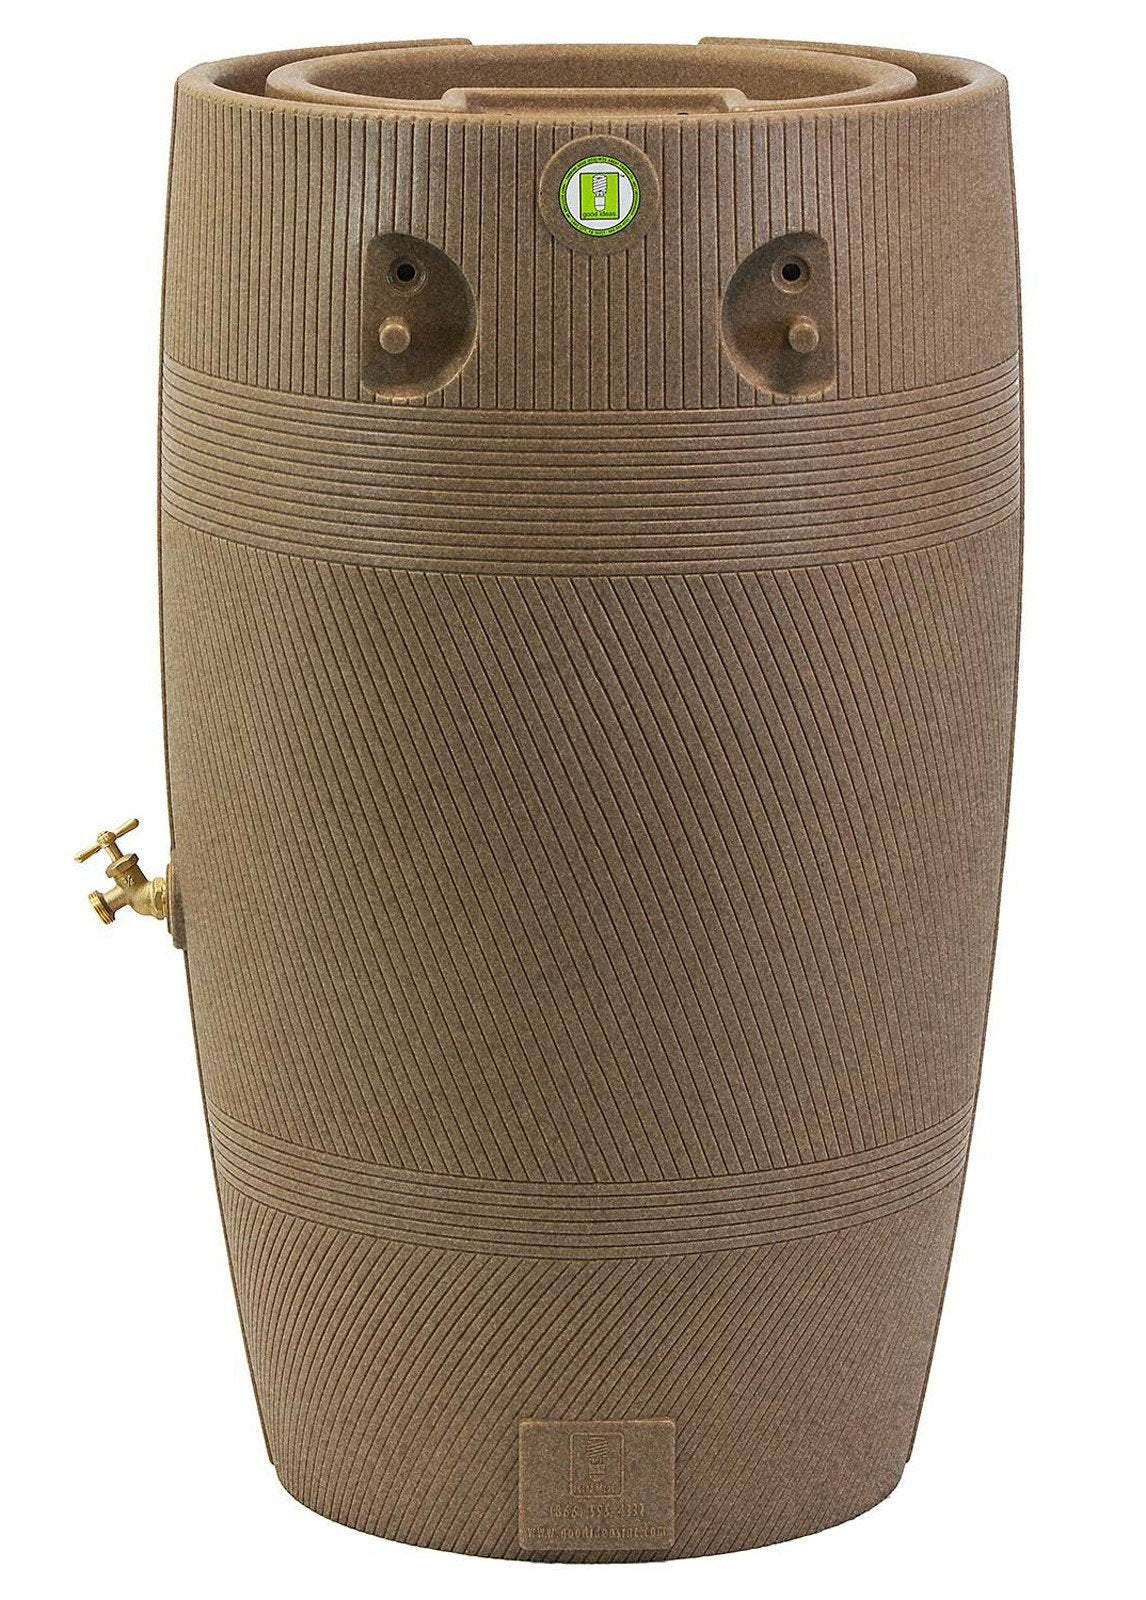 50 Gallon Rain Barrel Portable Water Collector Brass Spigot Planter Top